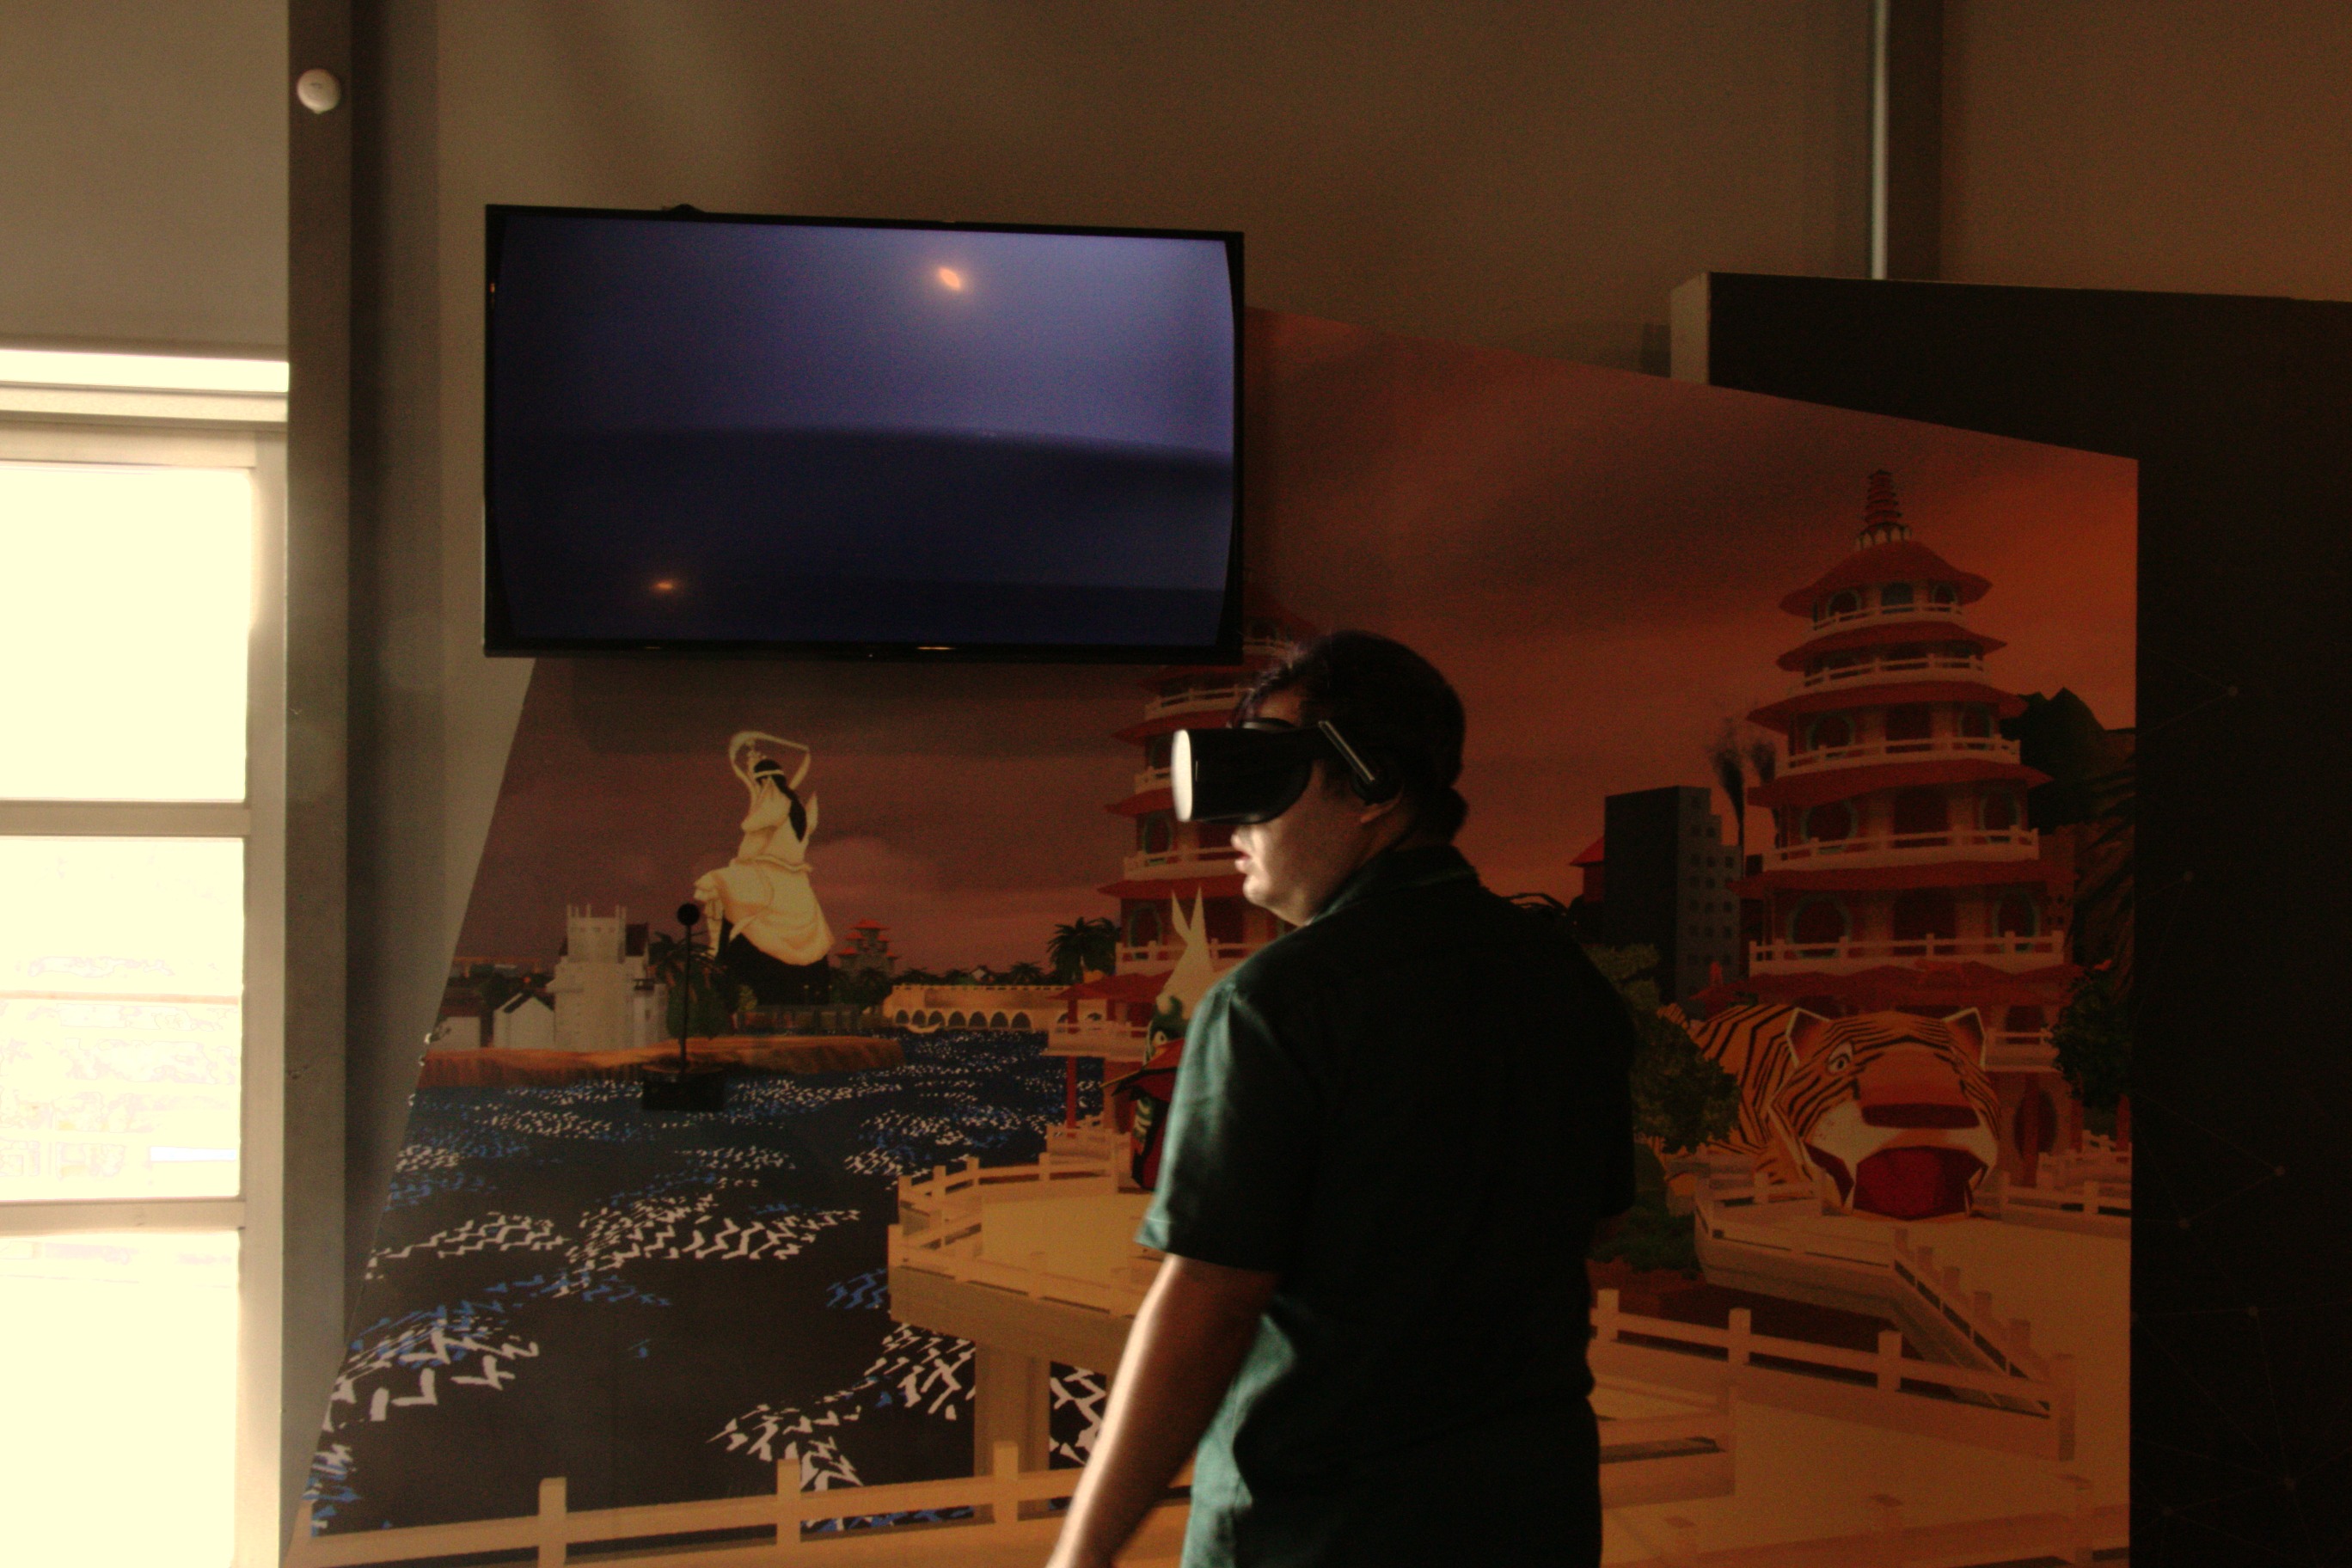 文章:106年新媒體科技應用展示之多感官互動體驗建置案 - 蓮池潭外傳-新媒體VR互動展的(10)張圖片